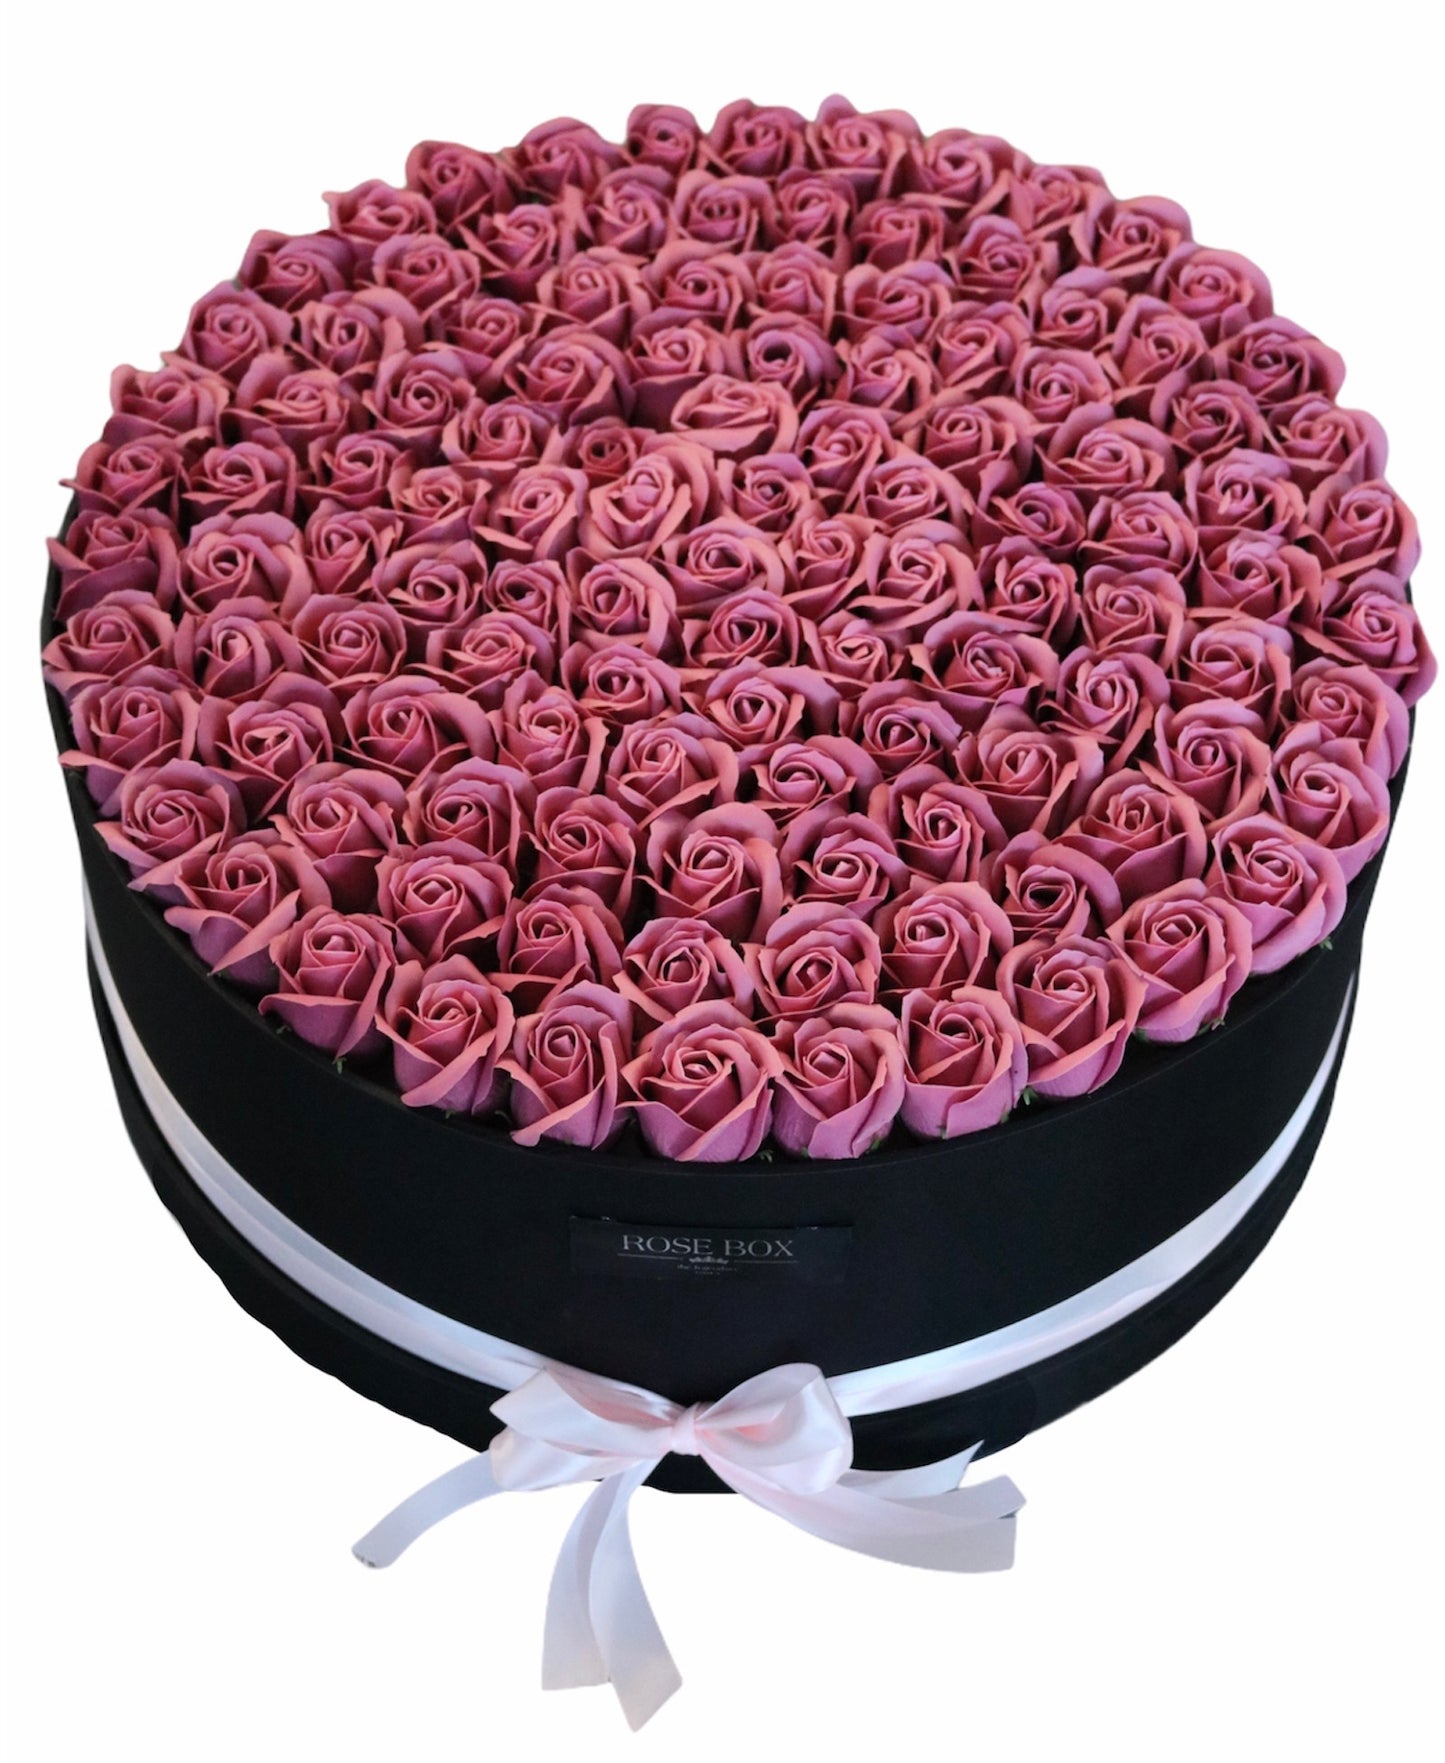 Cutie mare neagră  cu 151 de trandafiri roz pudrat